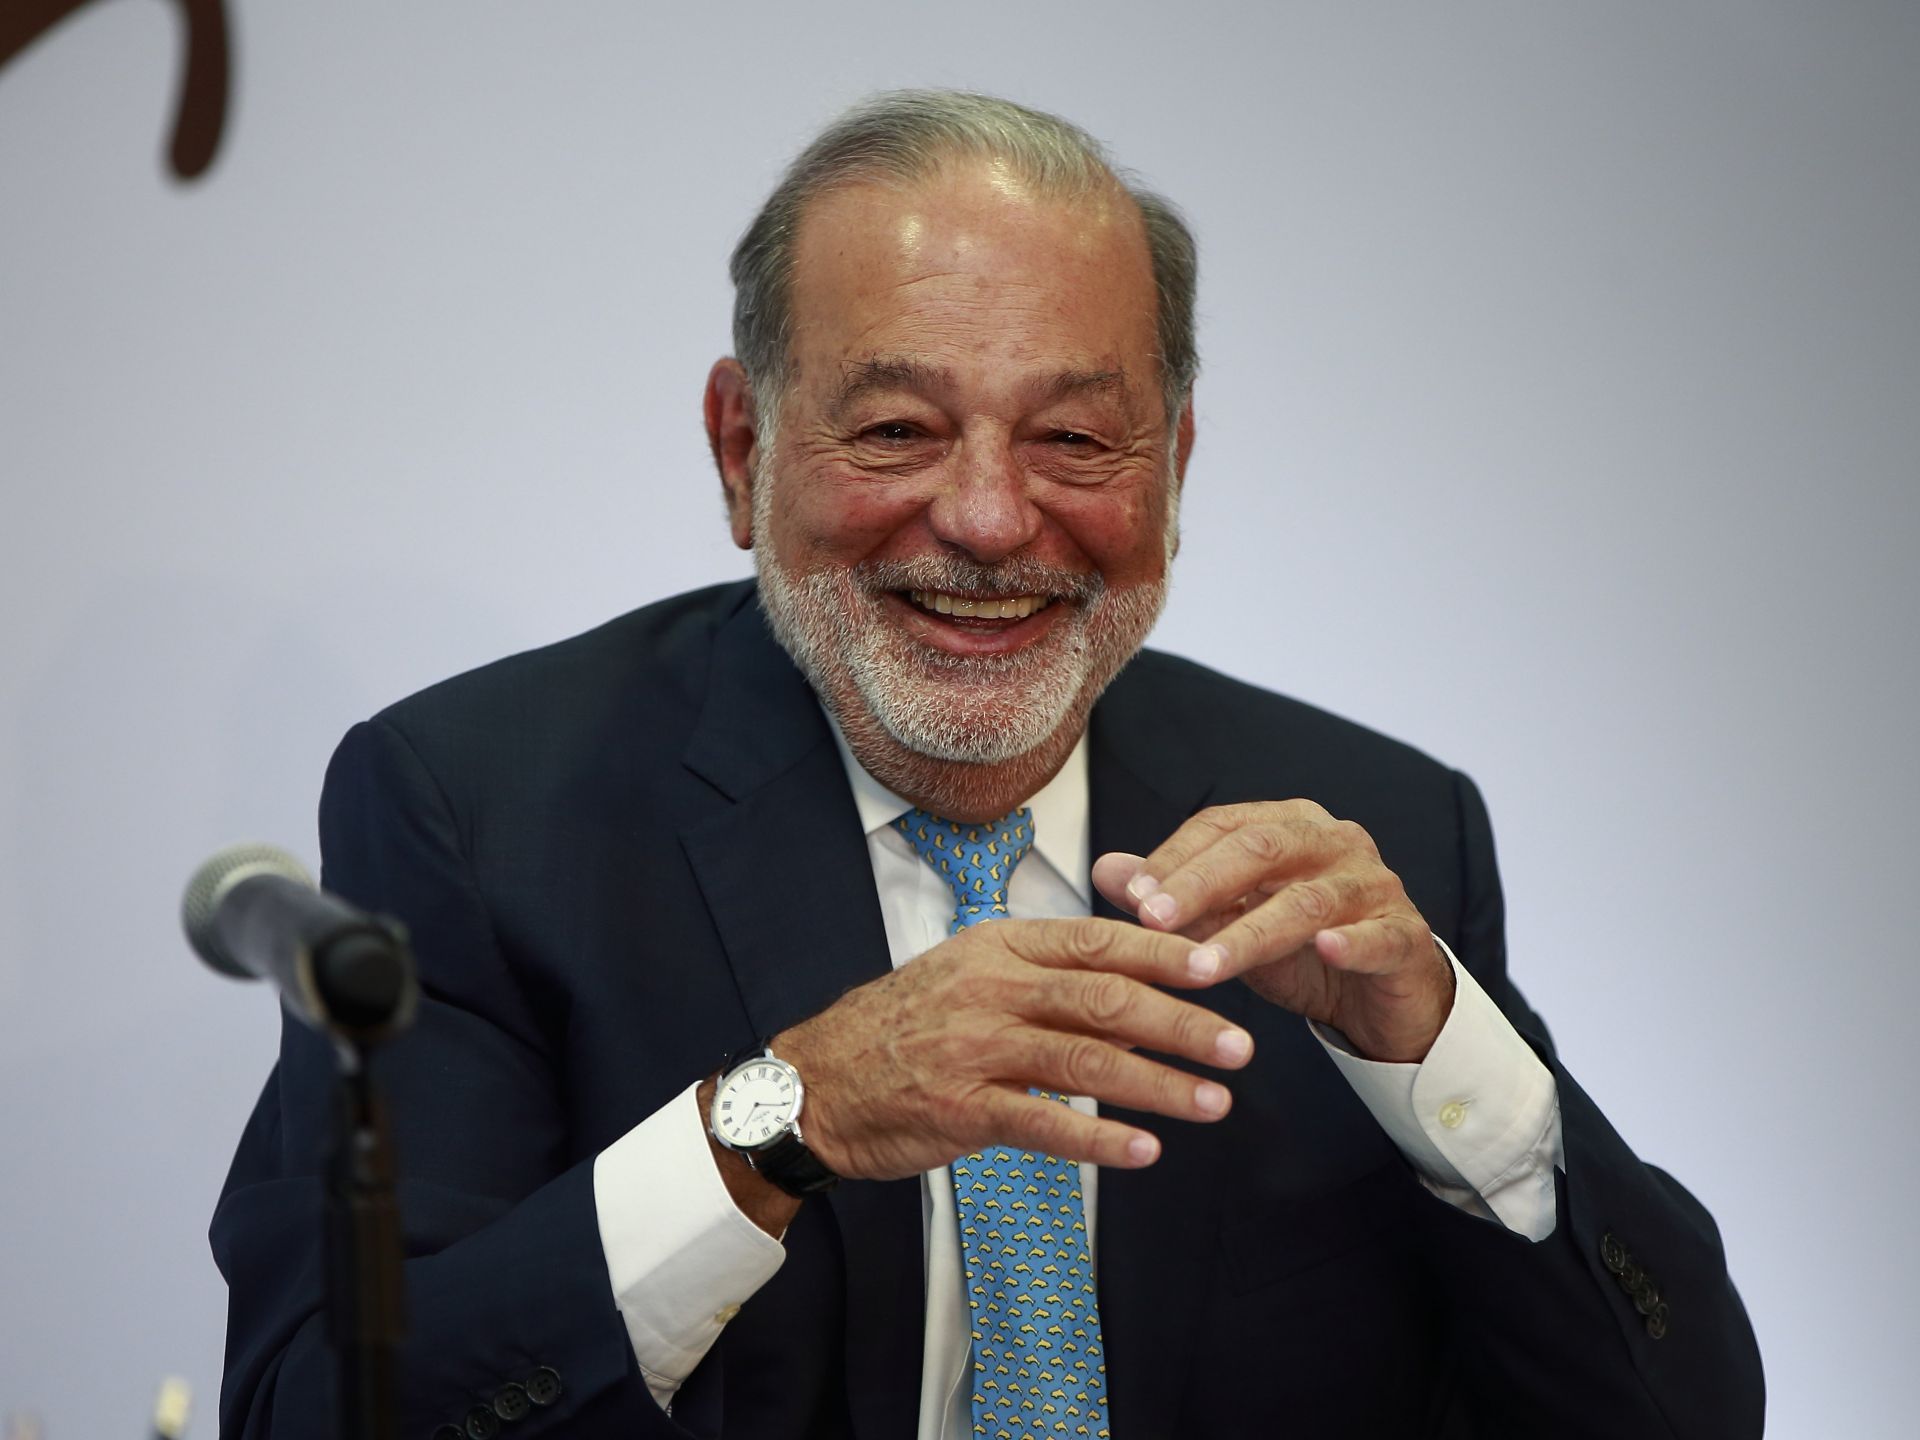 El magnate mexicano Carlos Slim participa durante una rueda de prensa